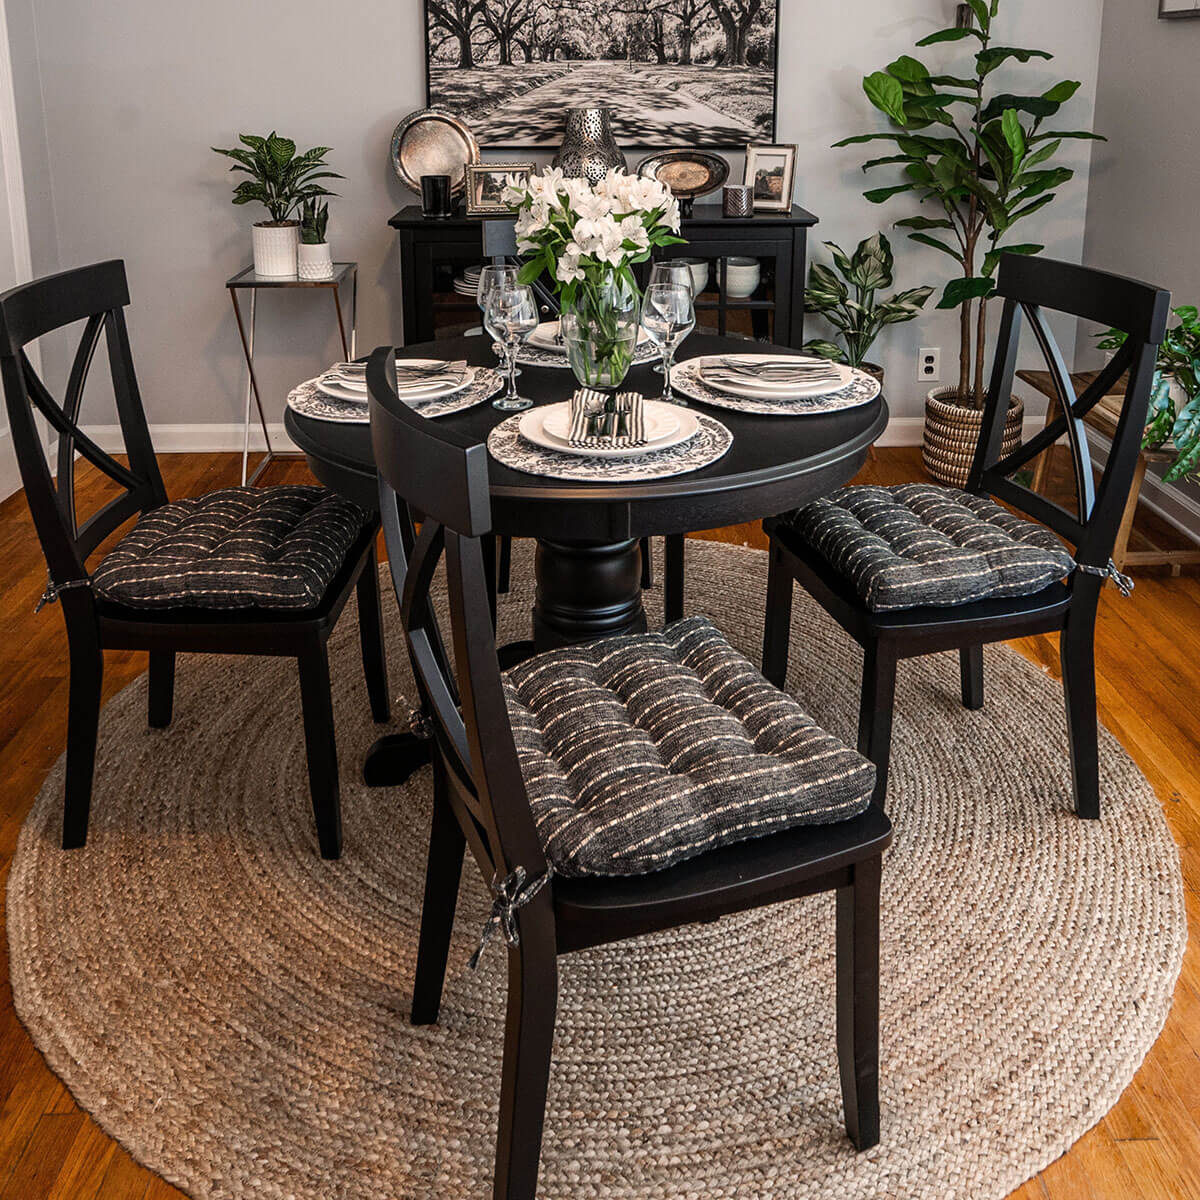 Lili Floral Dining Chair Pad - Latex Foam Fill – Barnett Home Decor